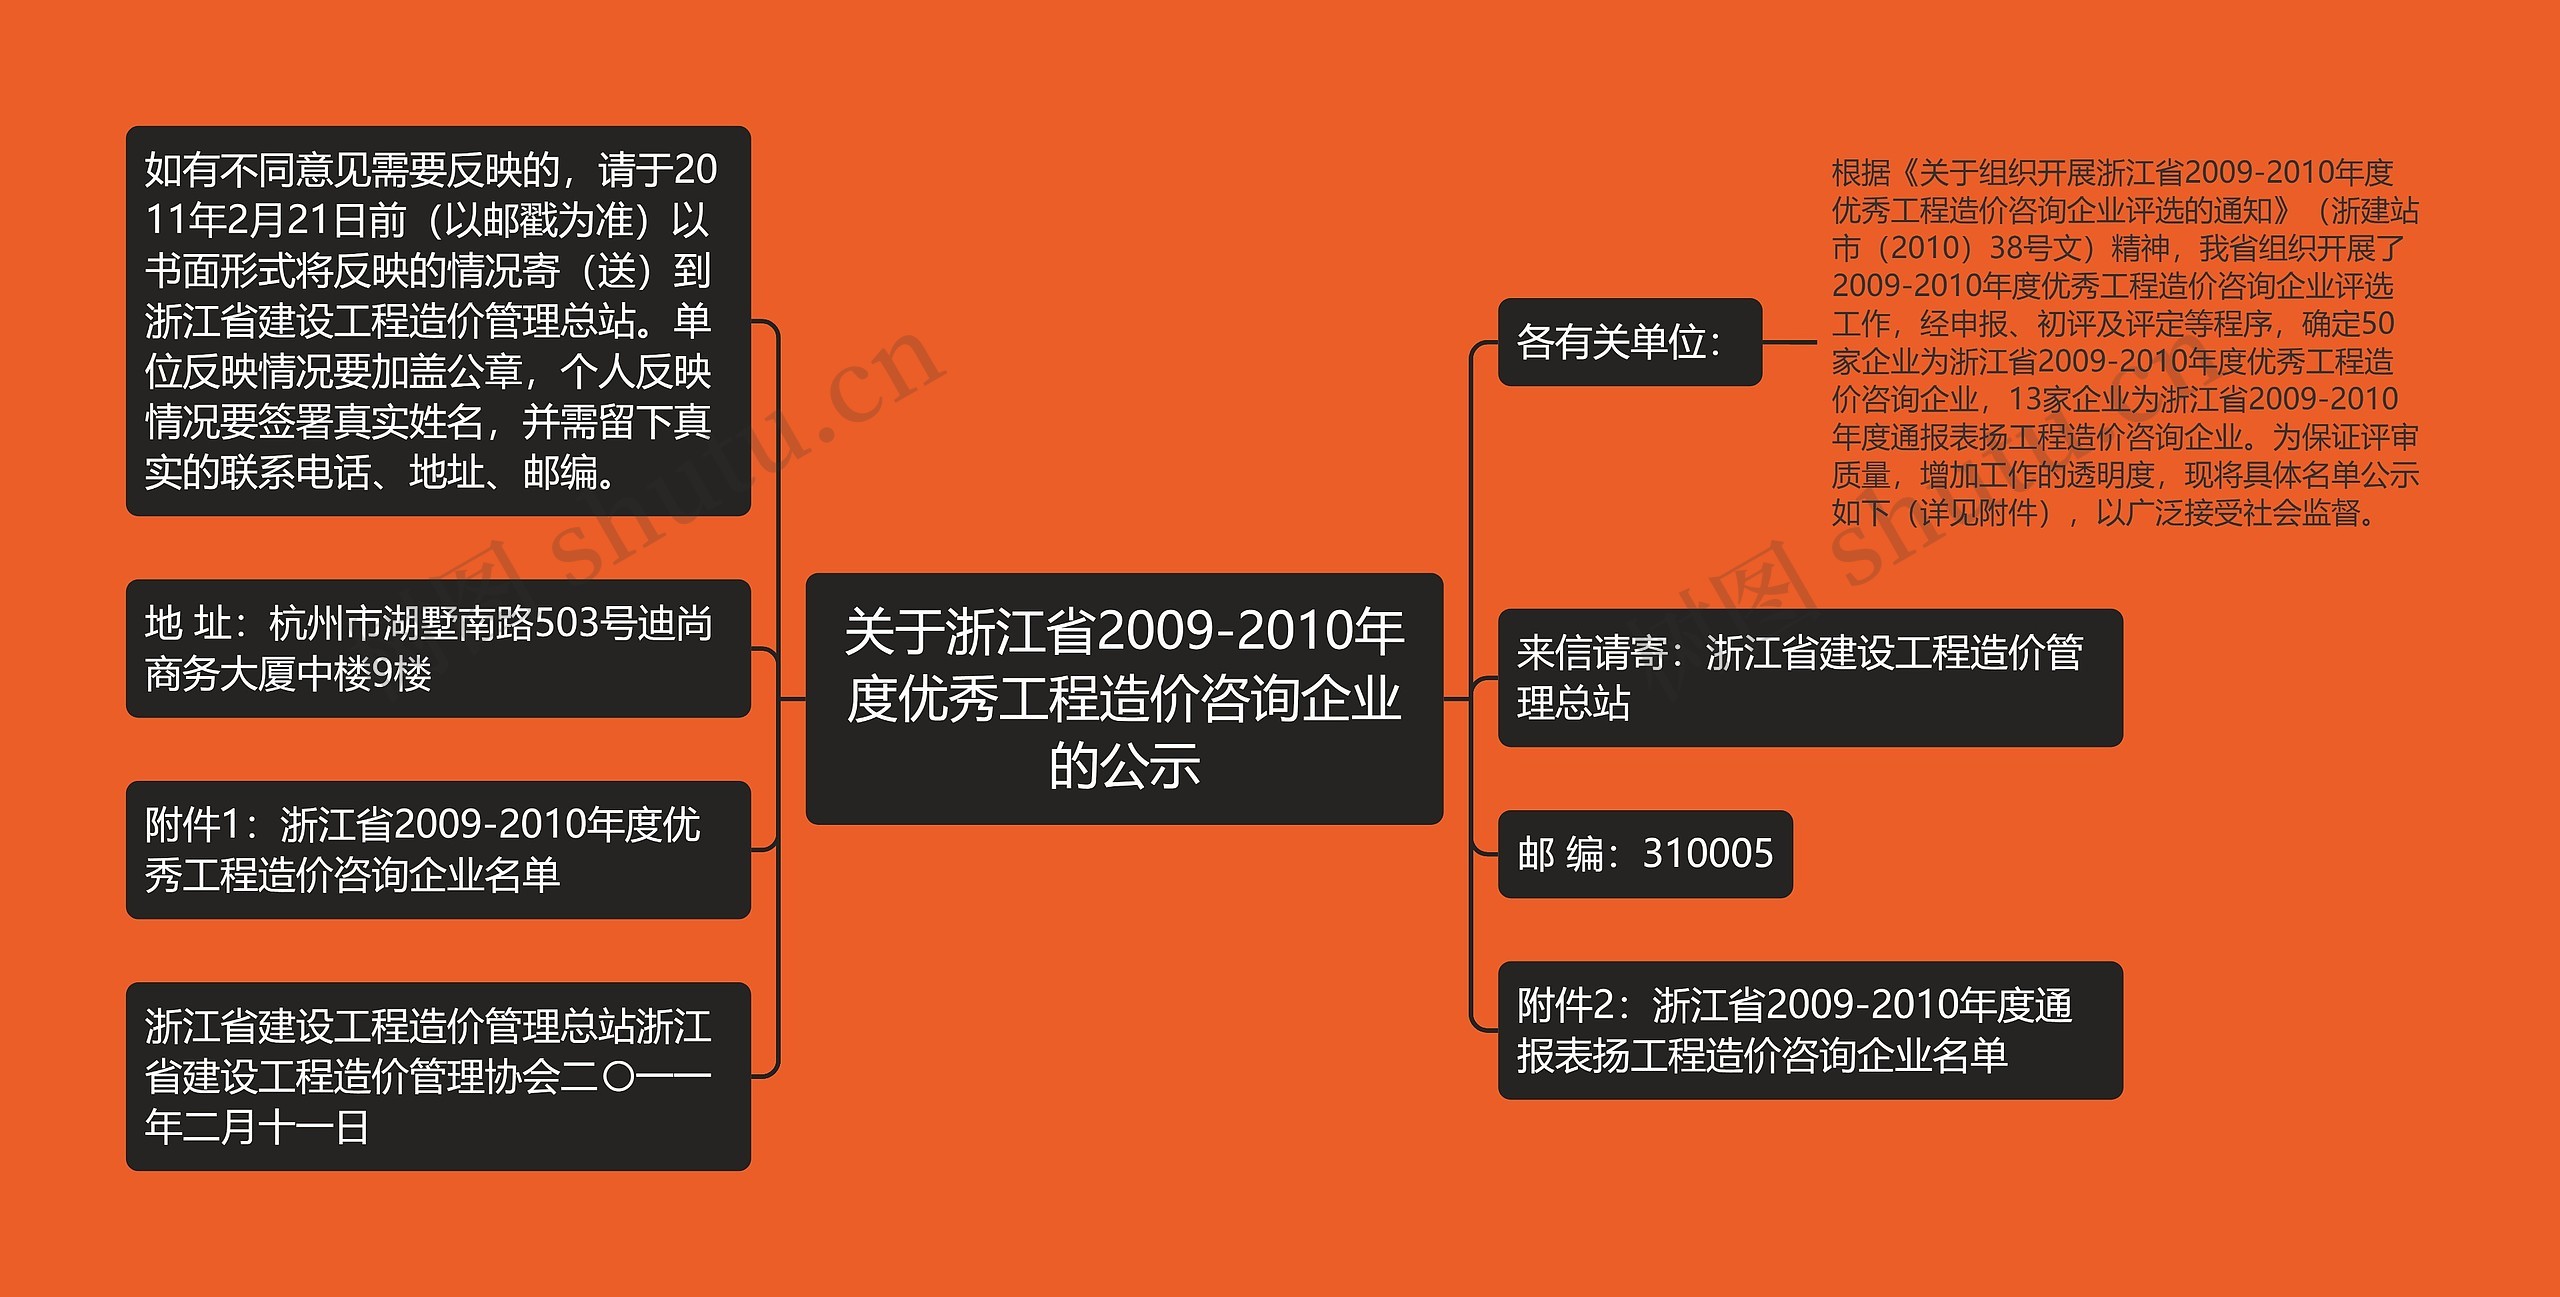 关于浙江省2009-2010年度优秀工程造价咨询企业的公示思维导图